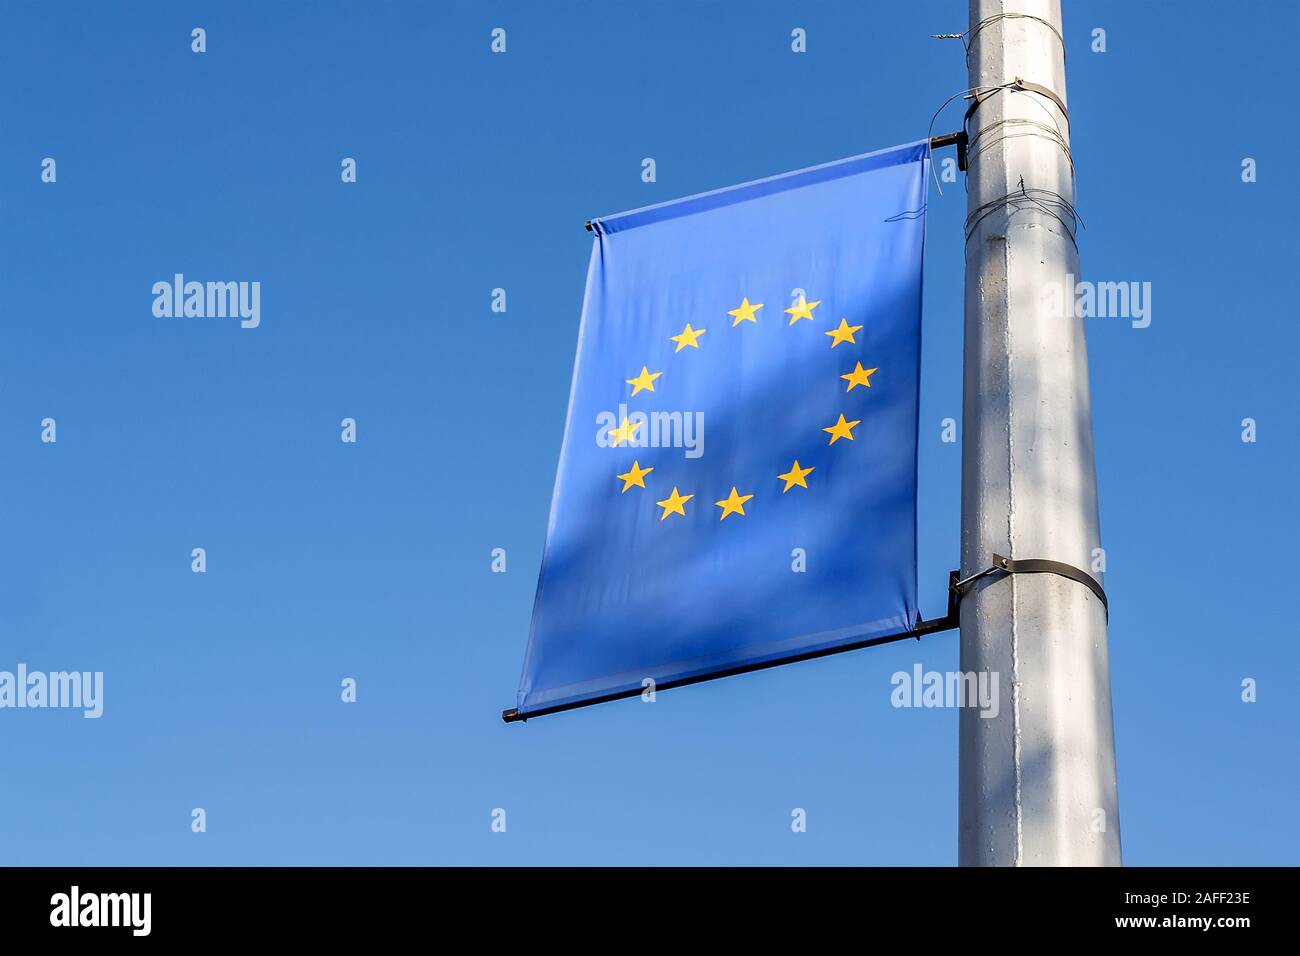 Cờ Liên minh Châu Âu (EU): Là biểu tượng của sự hợp tác và đoàn kết trong khu vực, cờ Liên minh Châu Âu mang đến một thông điệp về sức mạnh của tổ chức lớn nhất thế giới. Hãy khám phá hình ảnh liên quan để tìm hiểu thêm về quyền lực và tầm ảnh hưởng của Liên minh Châu Âu.